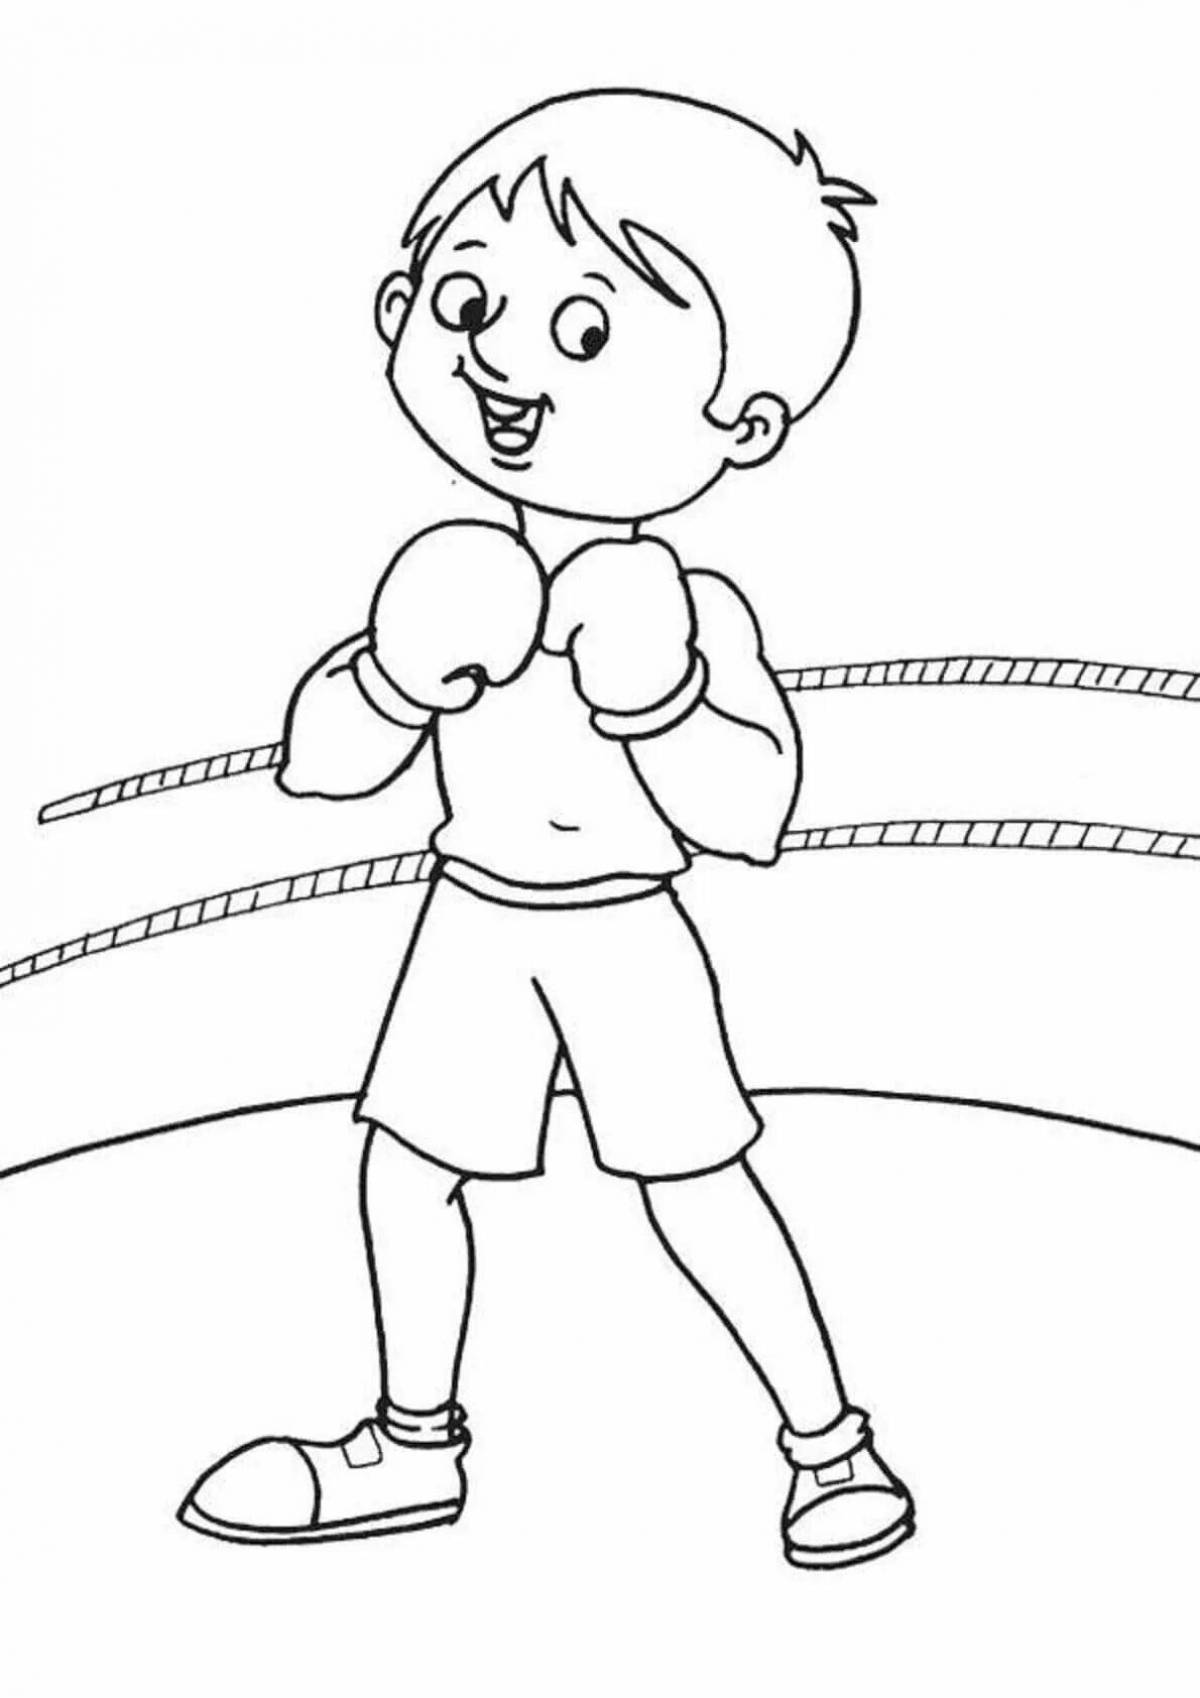 Увлекательная раскраска «бокс и бу» для детей